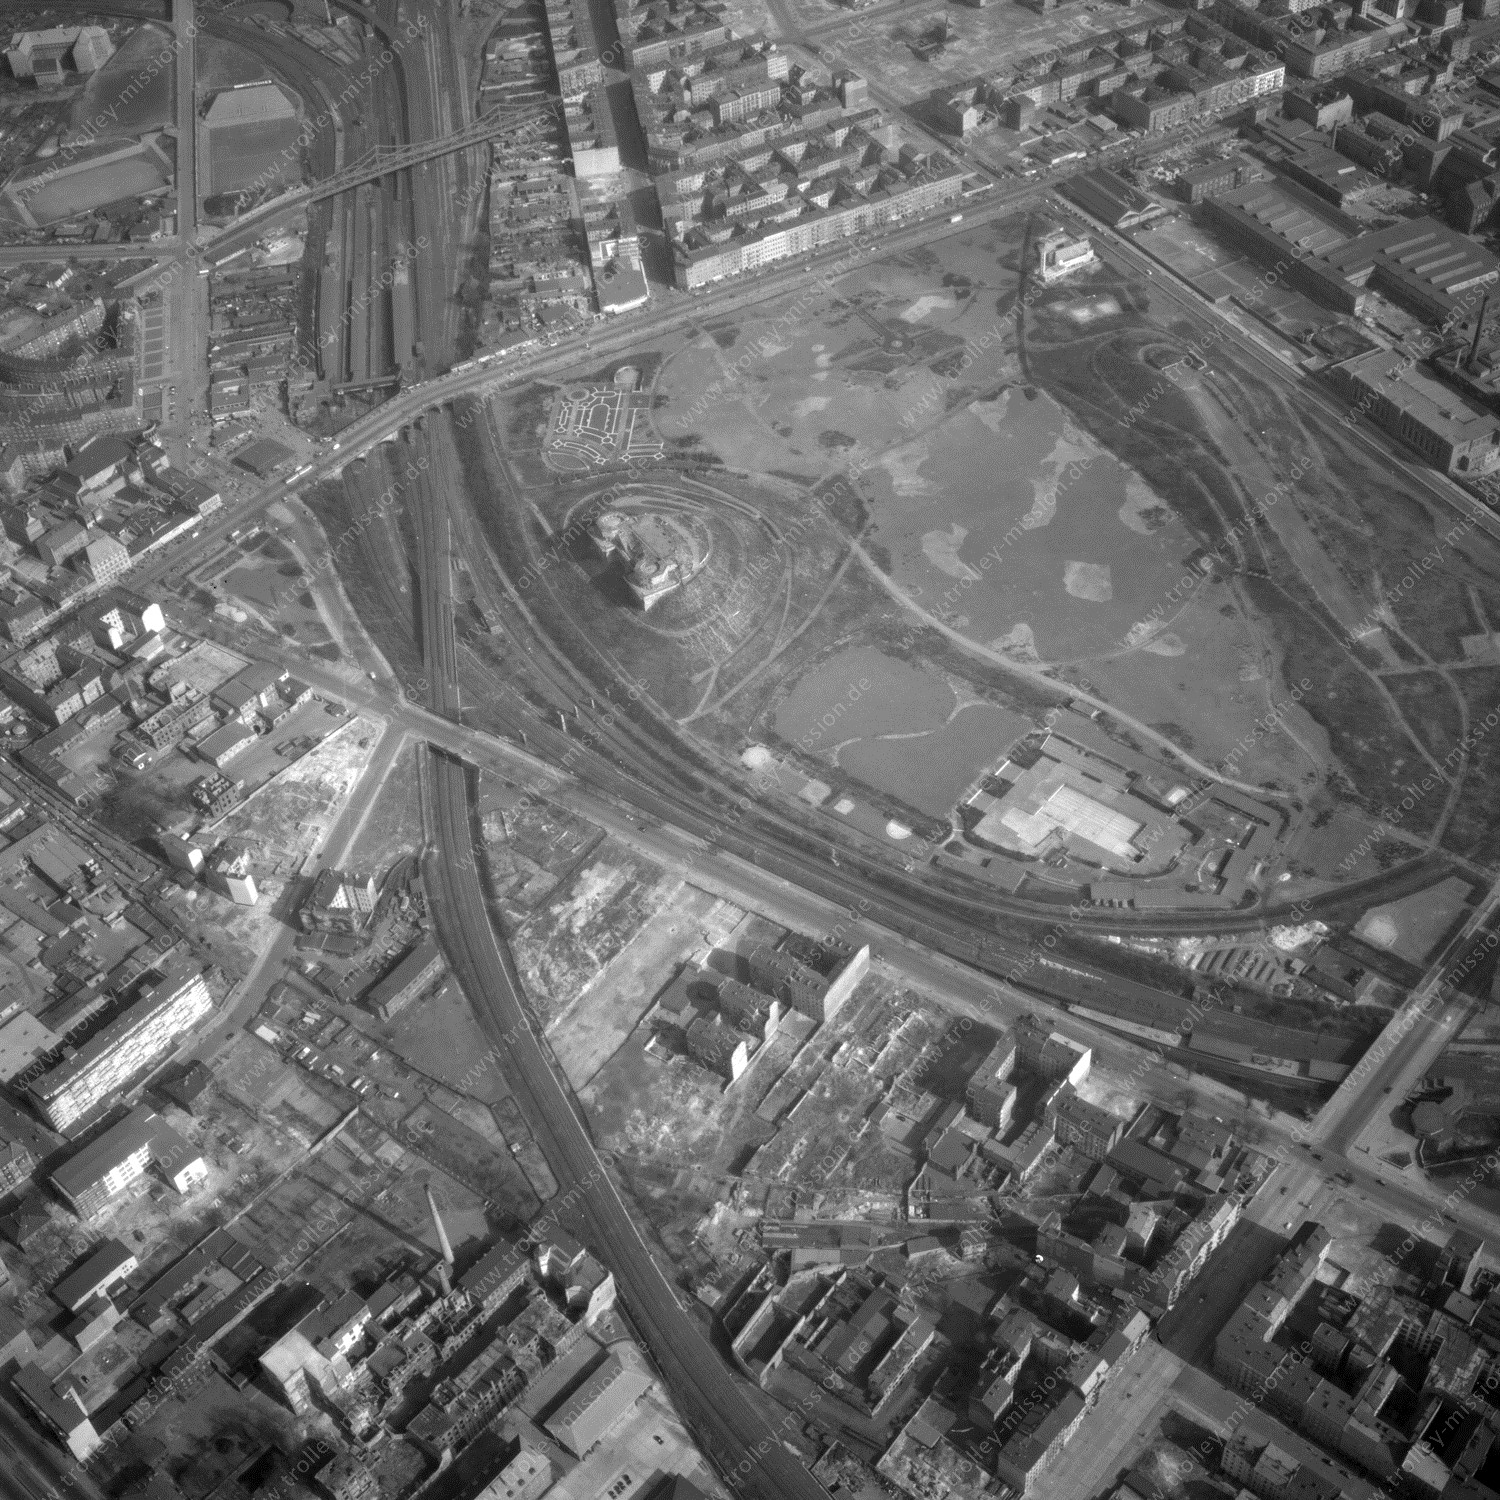 Alte Fotos und Luftbilder von Berlin - Luftbildaufnahme Nr. 09 - Historische Luftaufnahmen von West-Berlin aus dem Jahr 1954 - Flugstrecke Romeo